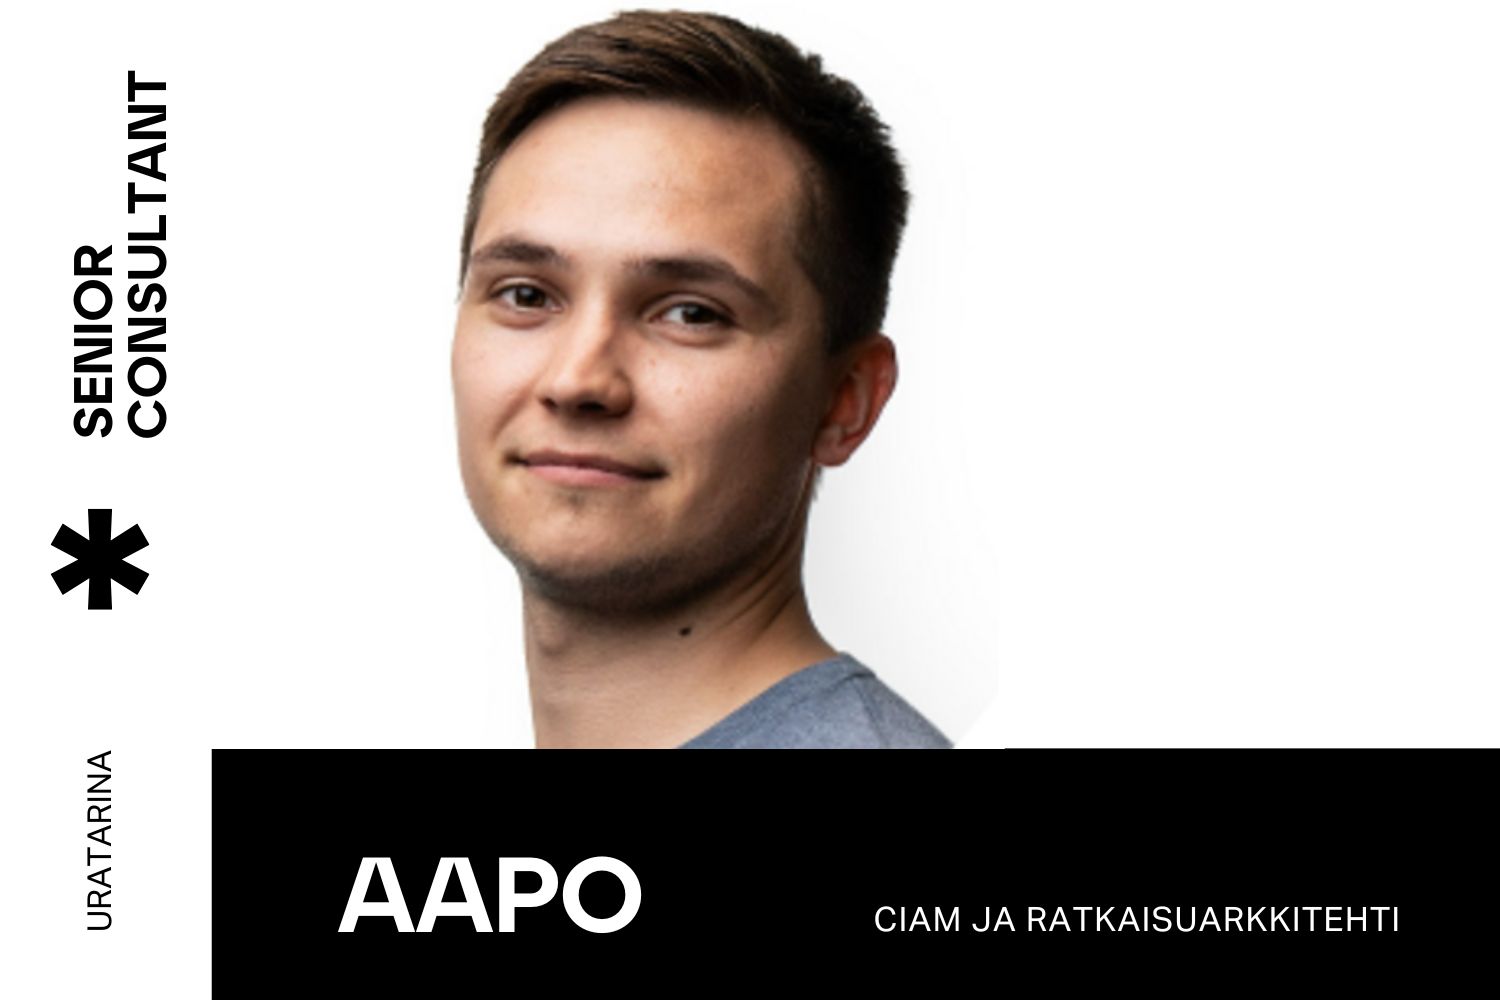 Aapo Heinonen on Loihteen Senior Cosultant, CIAM ja ratkaisuarkkitehti